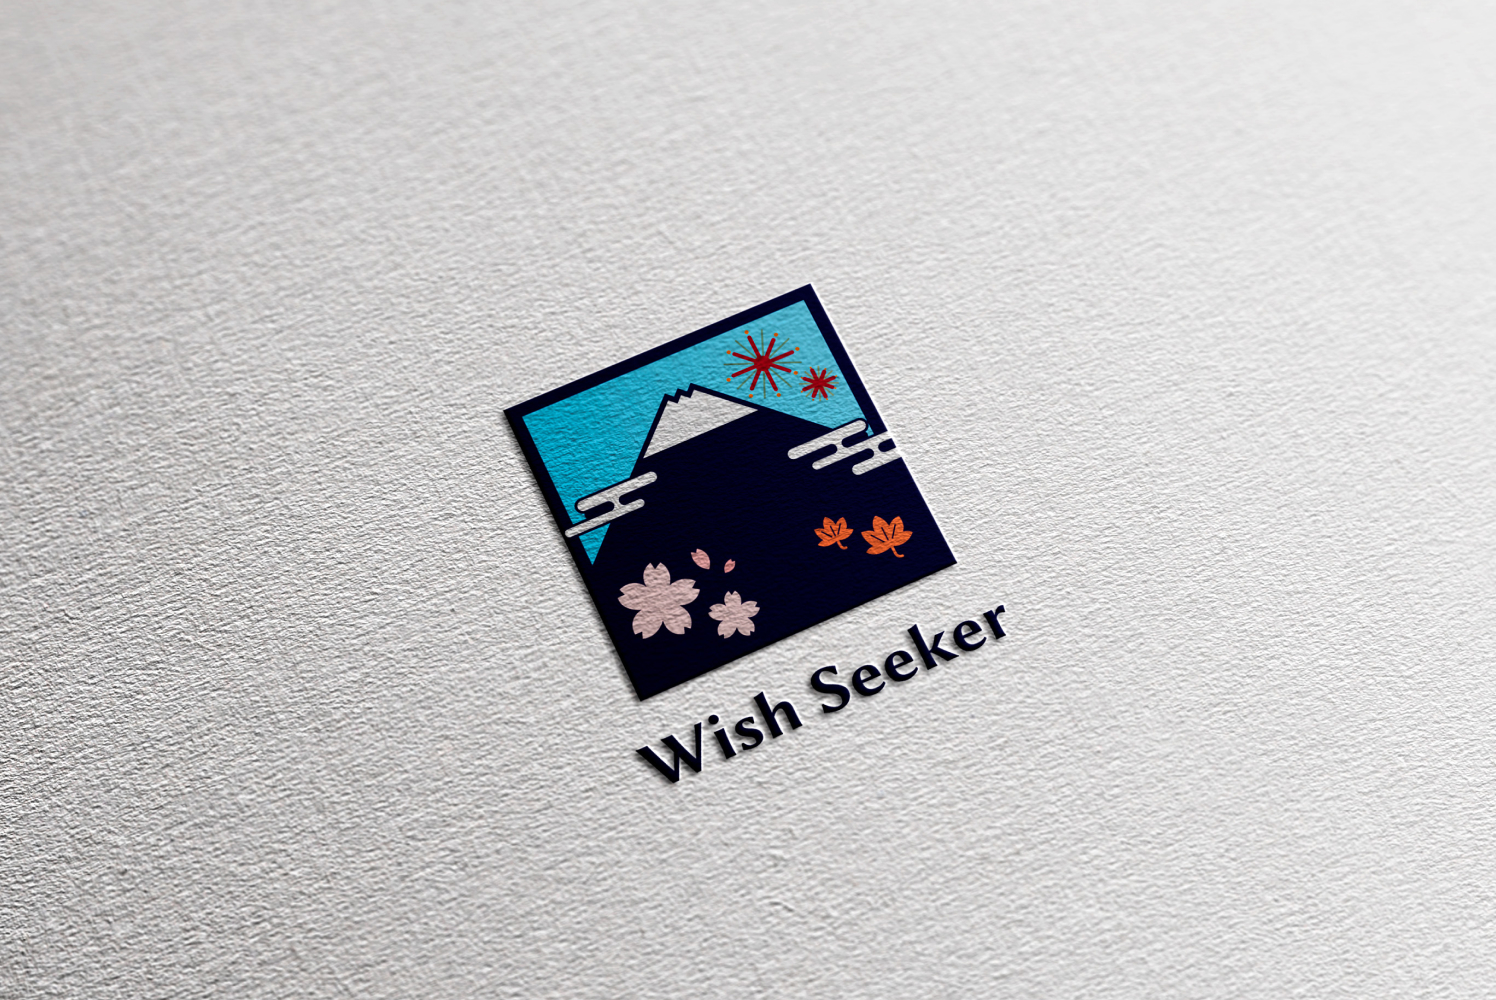 Wish Seeker様のECサイトに使用するブランドロゴ